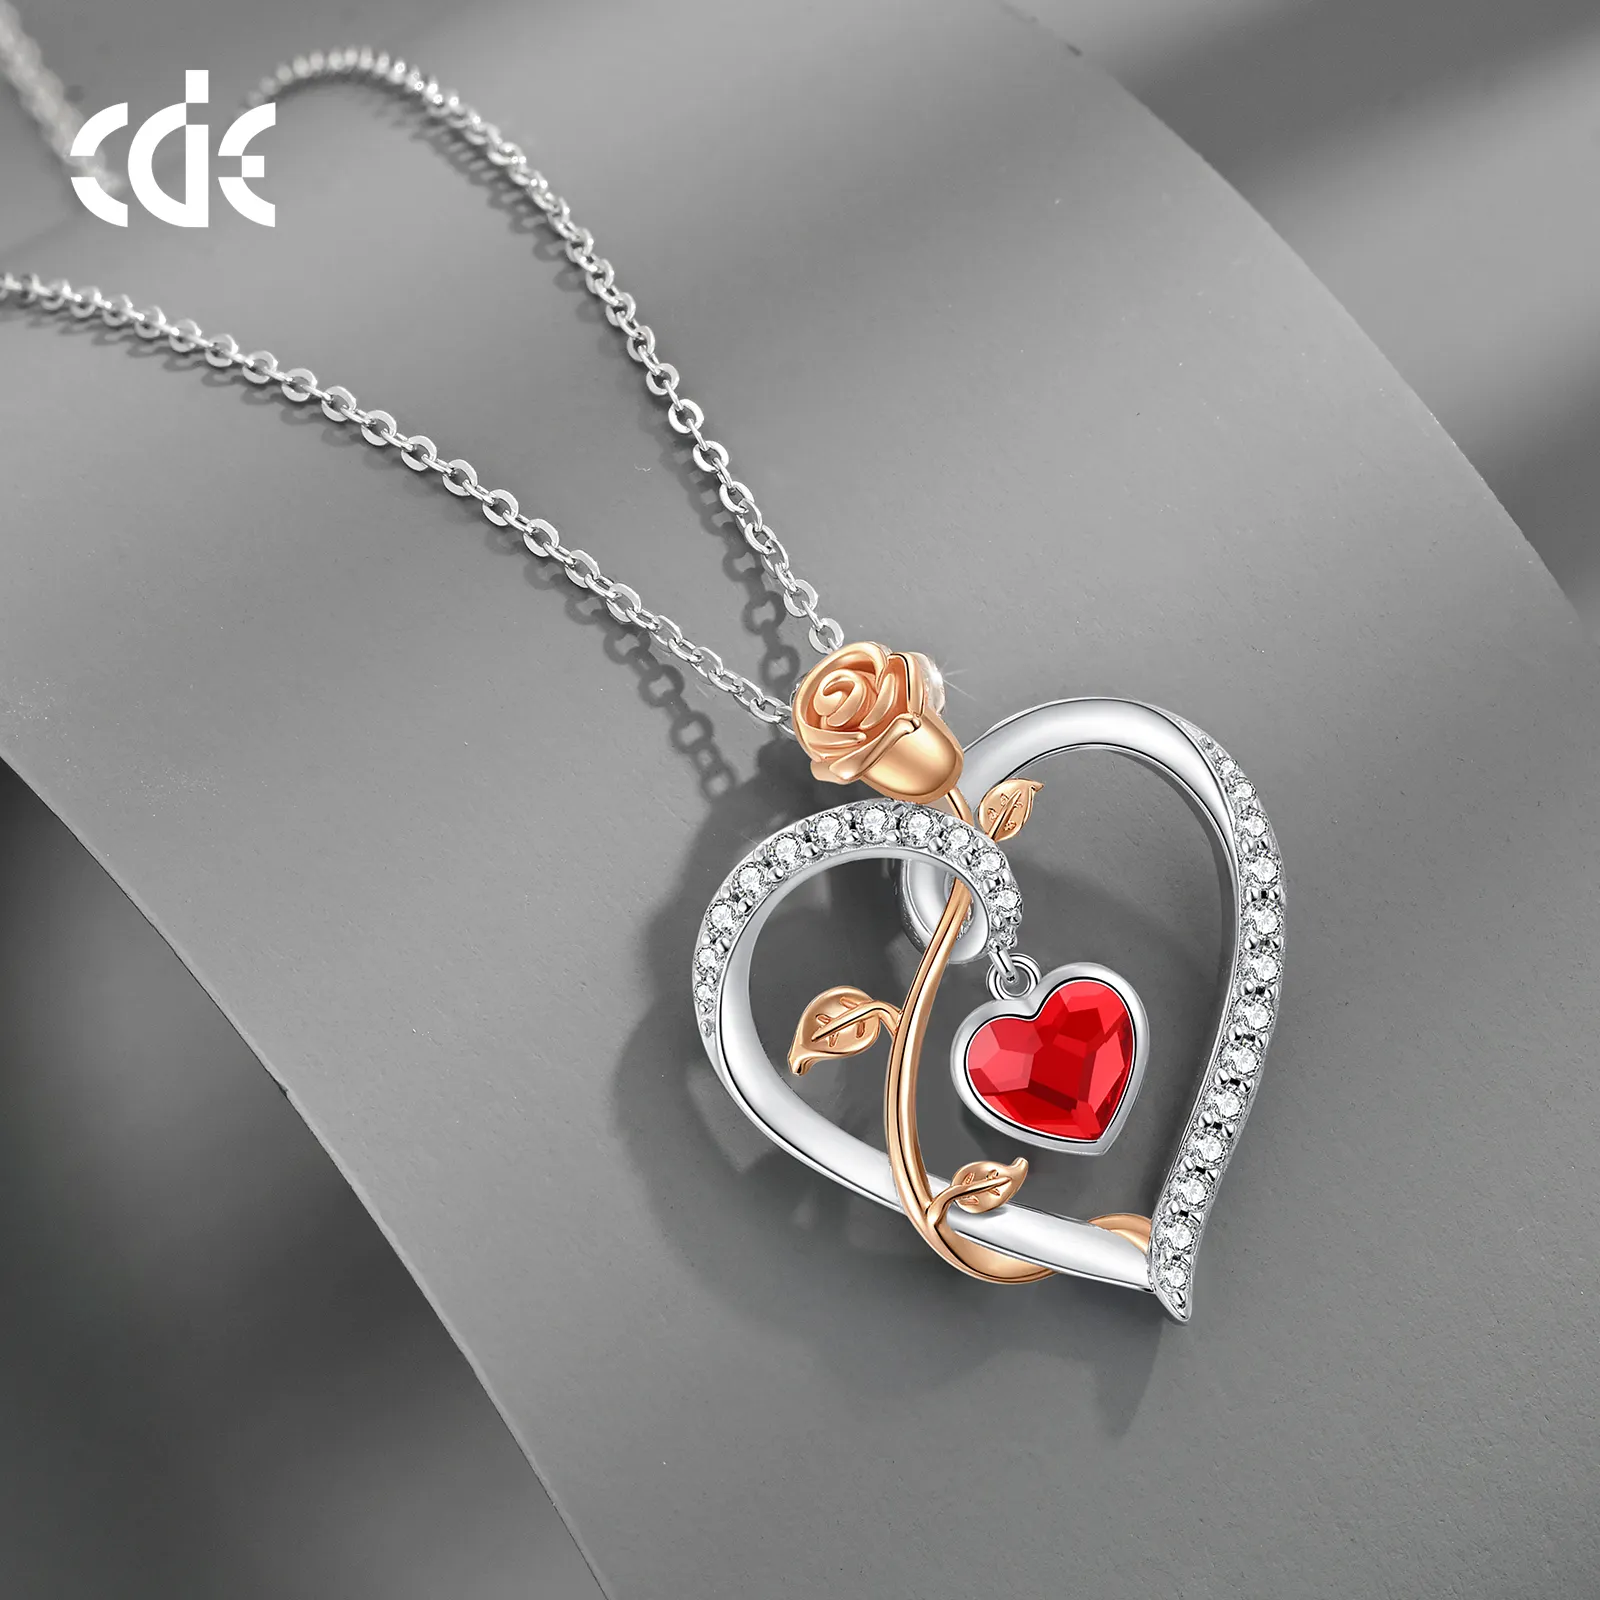 CDE SSYN001 feiner Schmuck 925 Sterling-Silberstein rote Kristalle mit Zirkonium-Halsband Großhandel Rose Blume Design-Halsband